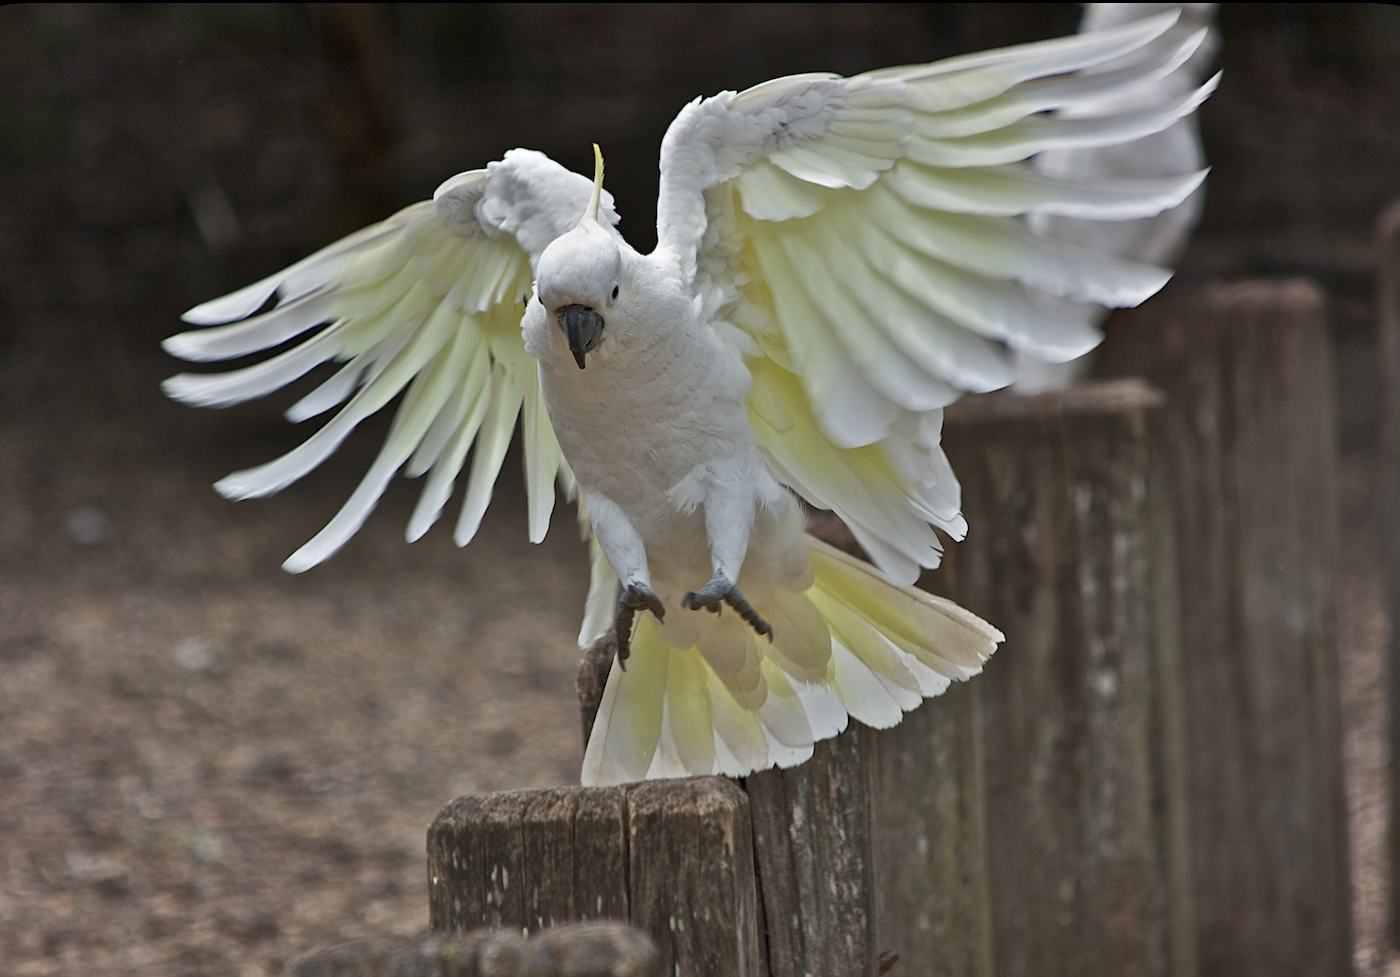 Kuşların kanat ve kuyruk tüyleri de hafiftir, esnek ve birbirleriyle orantılıdır bir yapıdadır. Yani uçuş için gerekli olan aerodinamik yapı tam anlamıyla mükemmel bir şekilde sağlanmıştır.